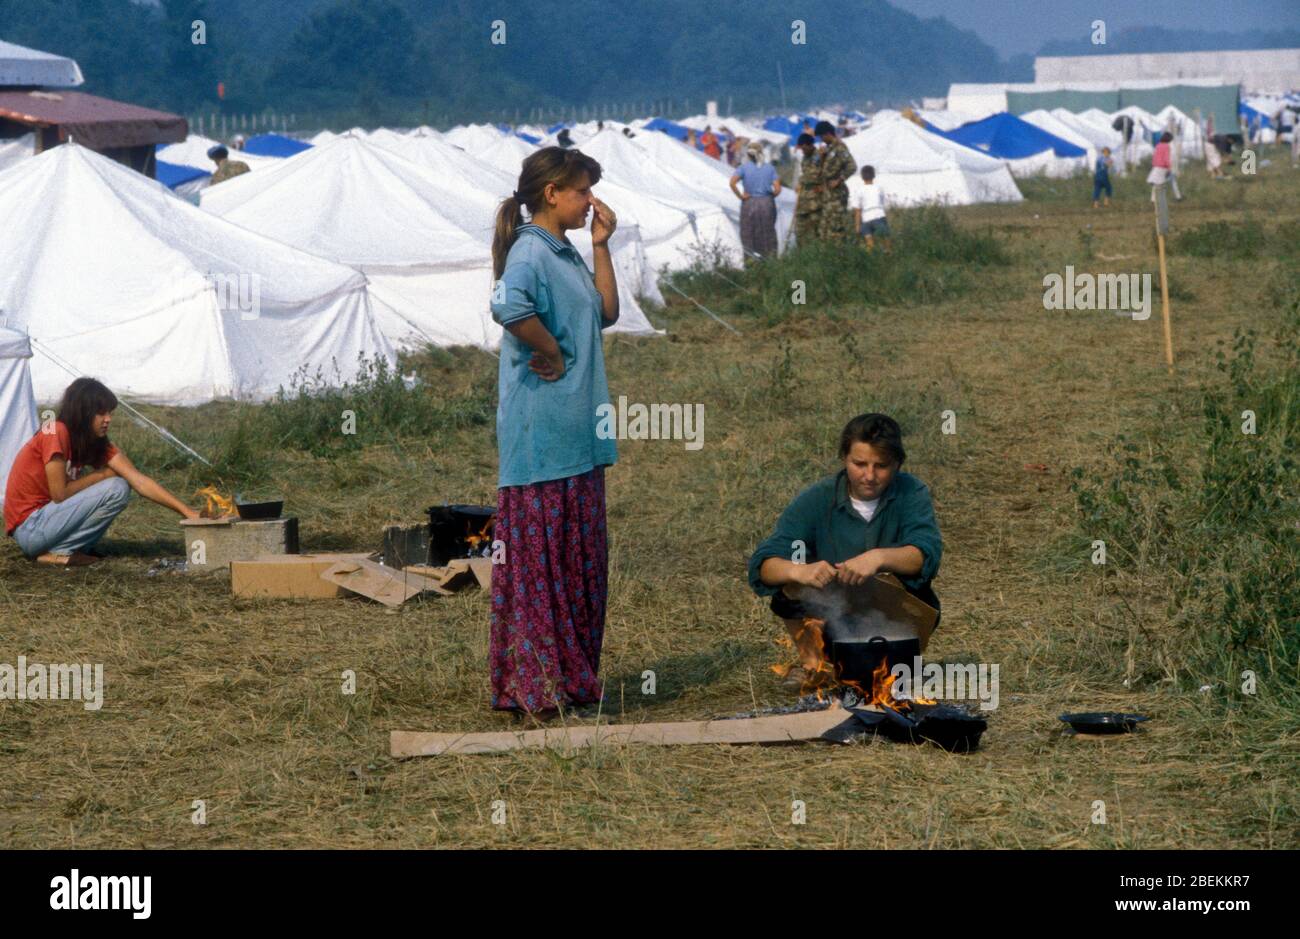 1995 Tuzla, Bosnien - Flugplatz Tuzla temporäres Flüchtlingslager für bosnische Muslime, die vor dem Massaker von Srebrenica während des Bosnienkrieges fliehen Stockfoto